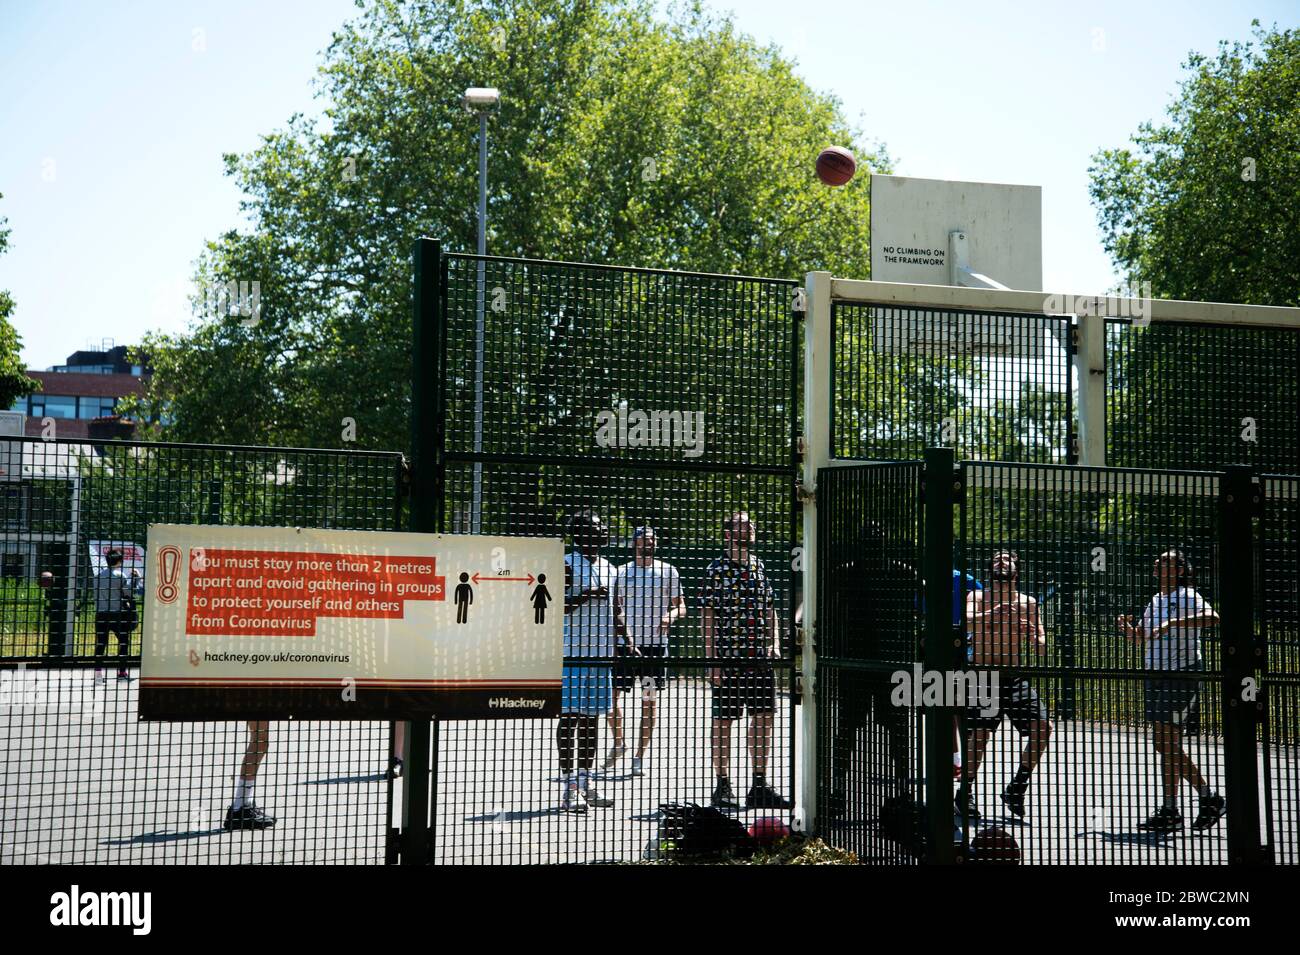 Hackney, Londra, maggio 2020 durante la pandemia di Covid-19 (Coronavirus). Un gruppo di giovani uomini gioca a basket ignorando le regole di allontanamento sociale. Foto Stock